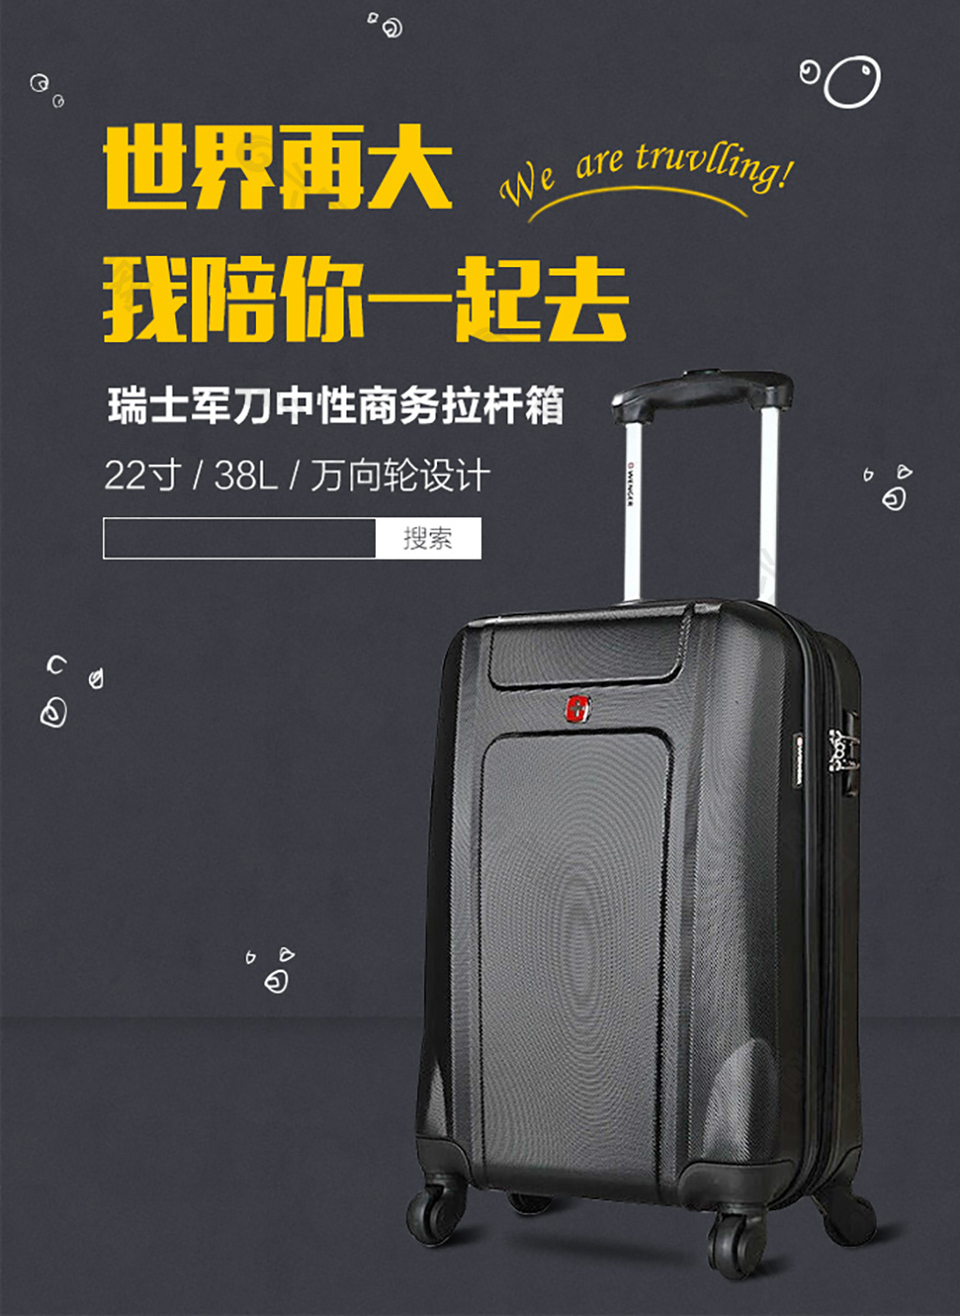 行李箱平面广告素材免费下载(图片编号:8177880)